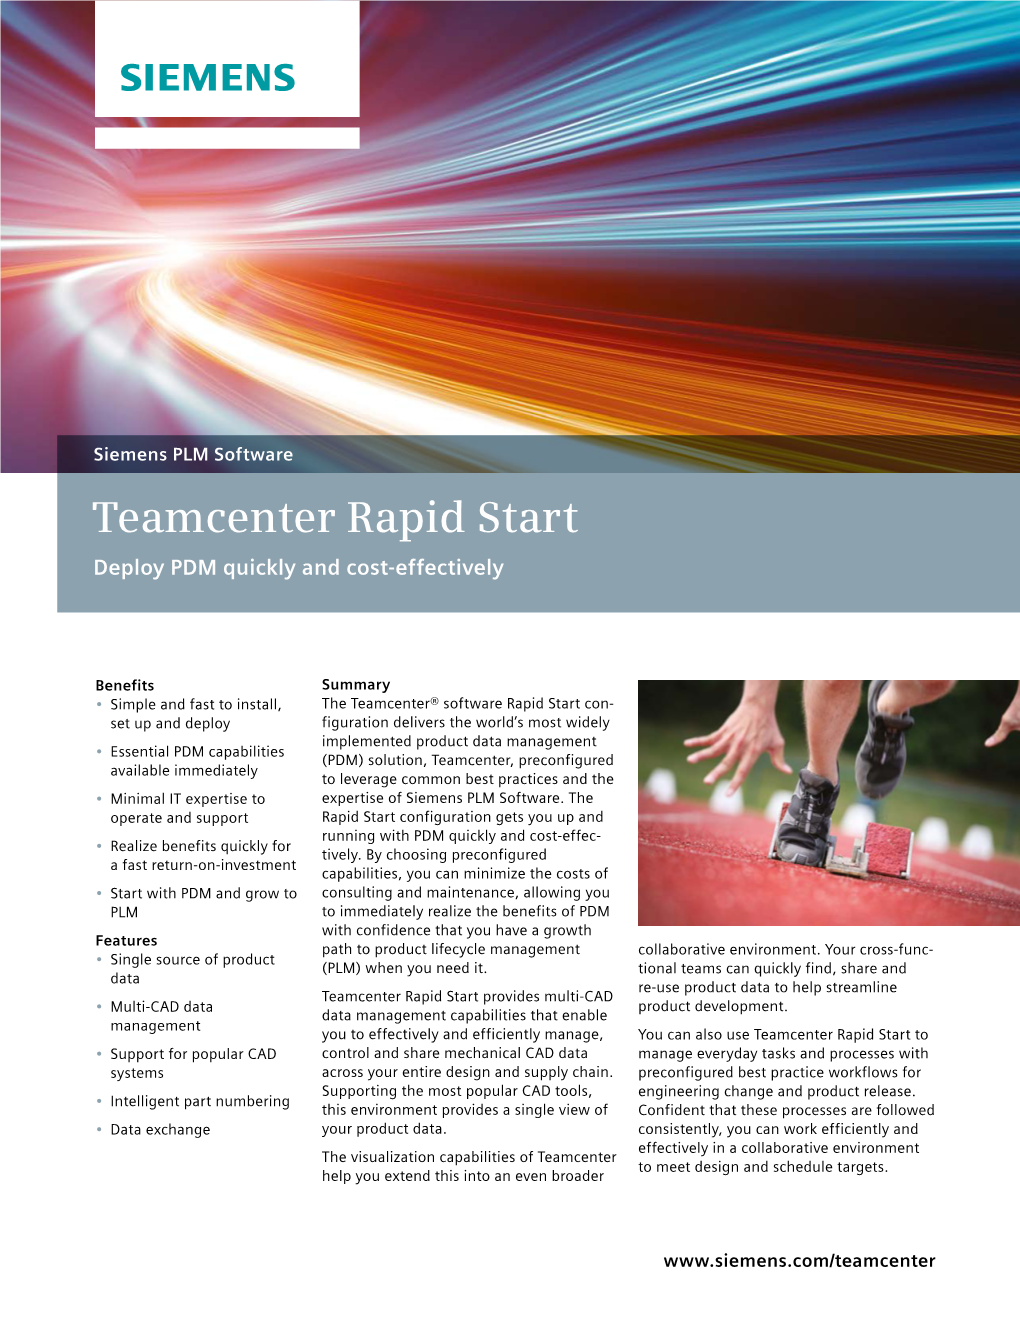 Siemens PLM Teamcenter Rapid Start Fact Sheet